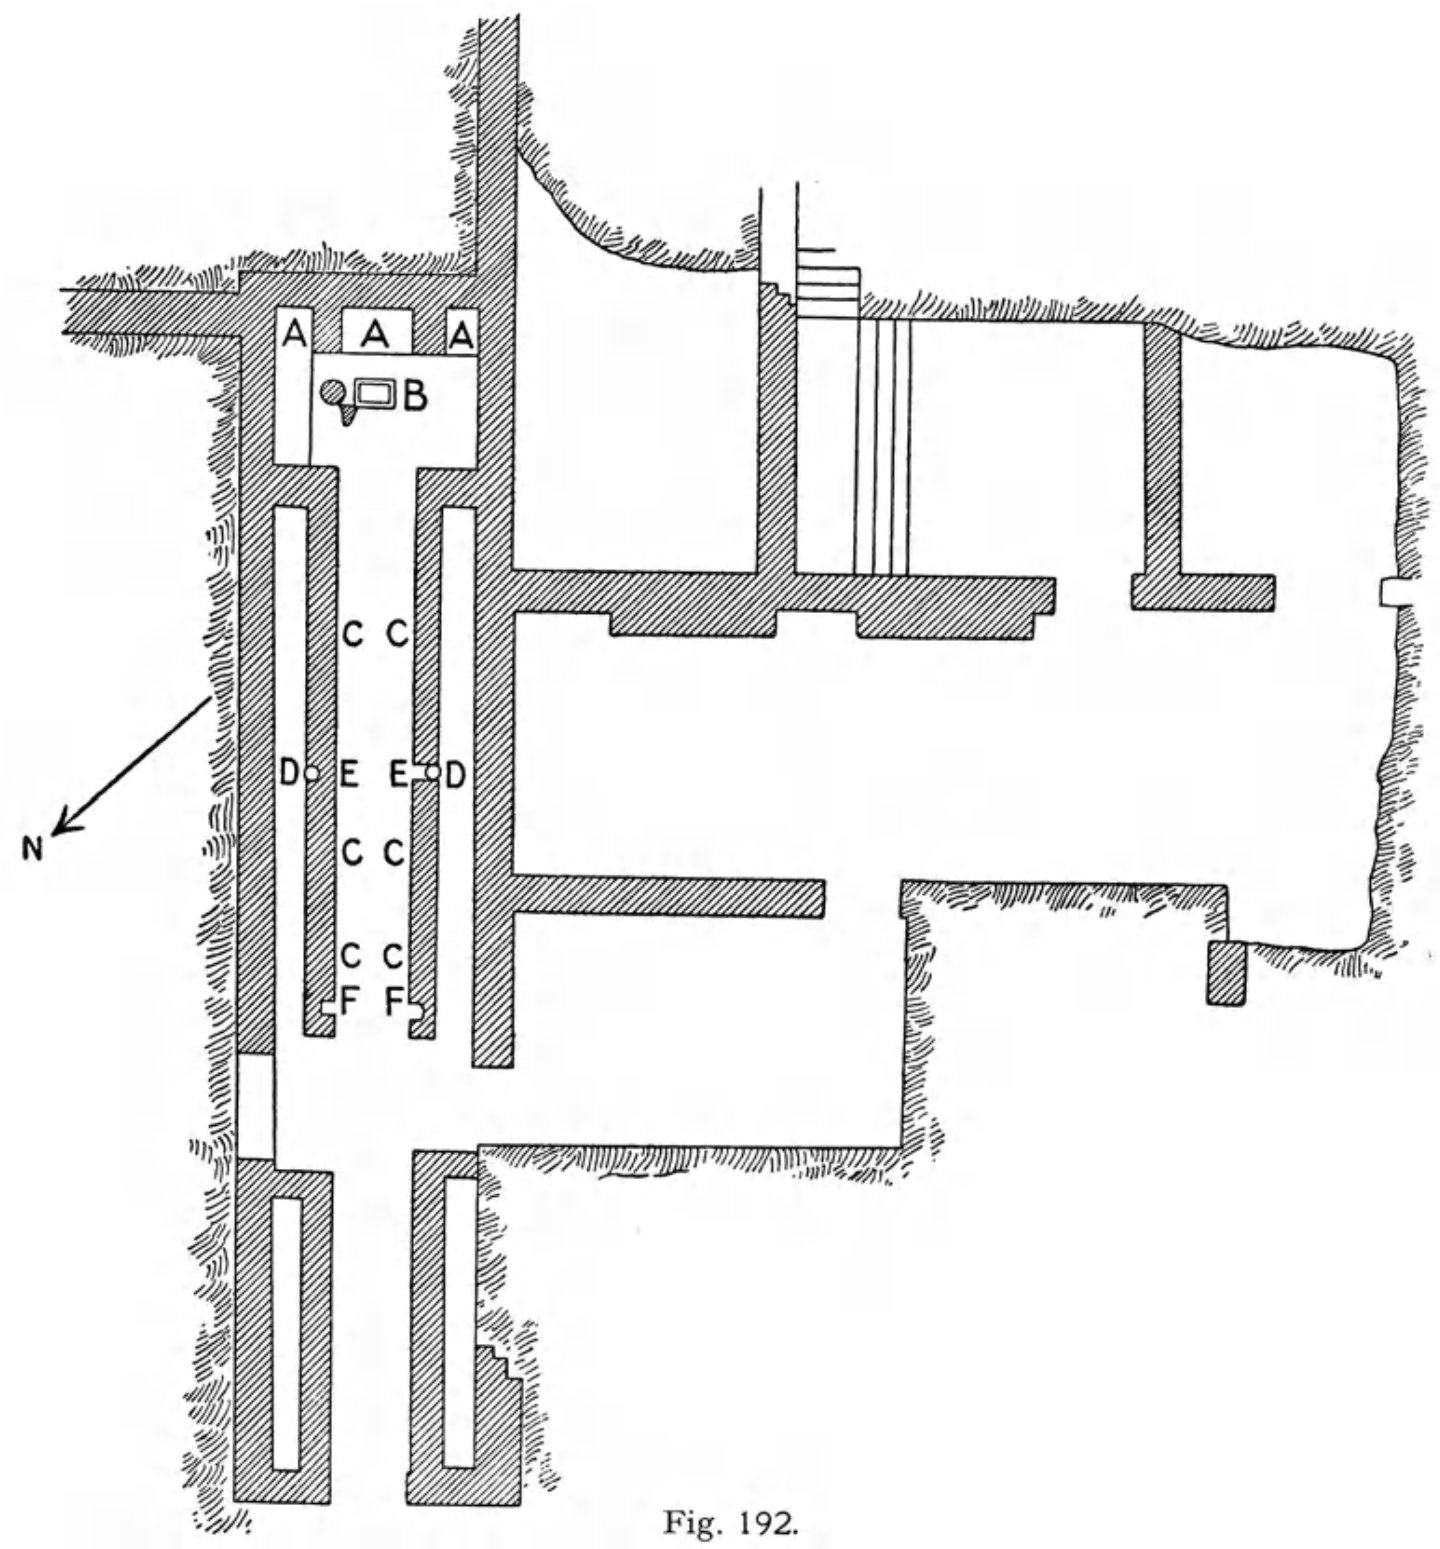 Plan of the Mithraeum of Spoleto